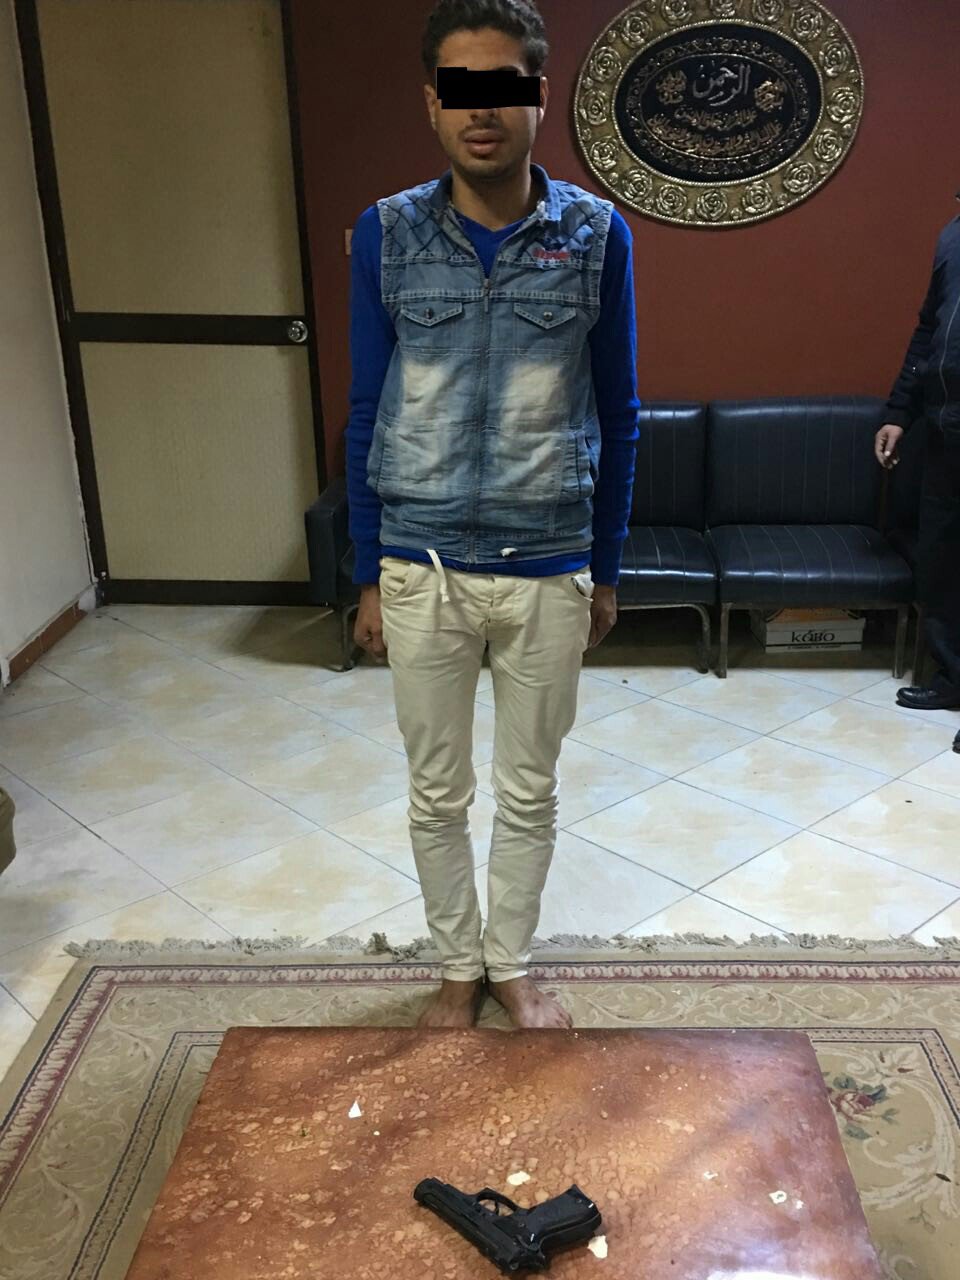  بالصور : القبض على مسجلين بحوزتهما أسلحة ومواد مخدرة بكفر الشيخ